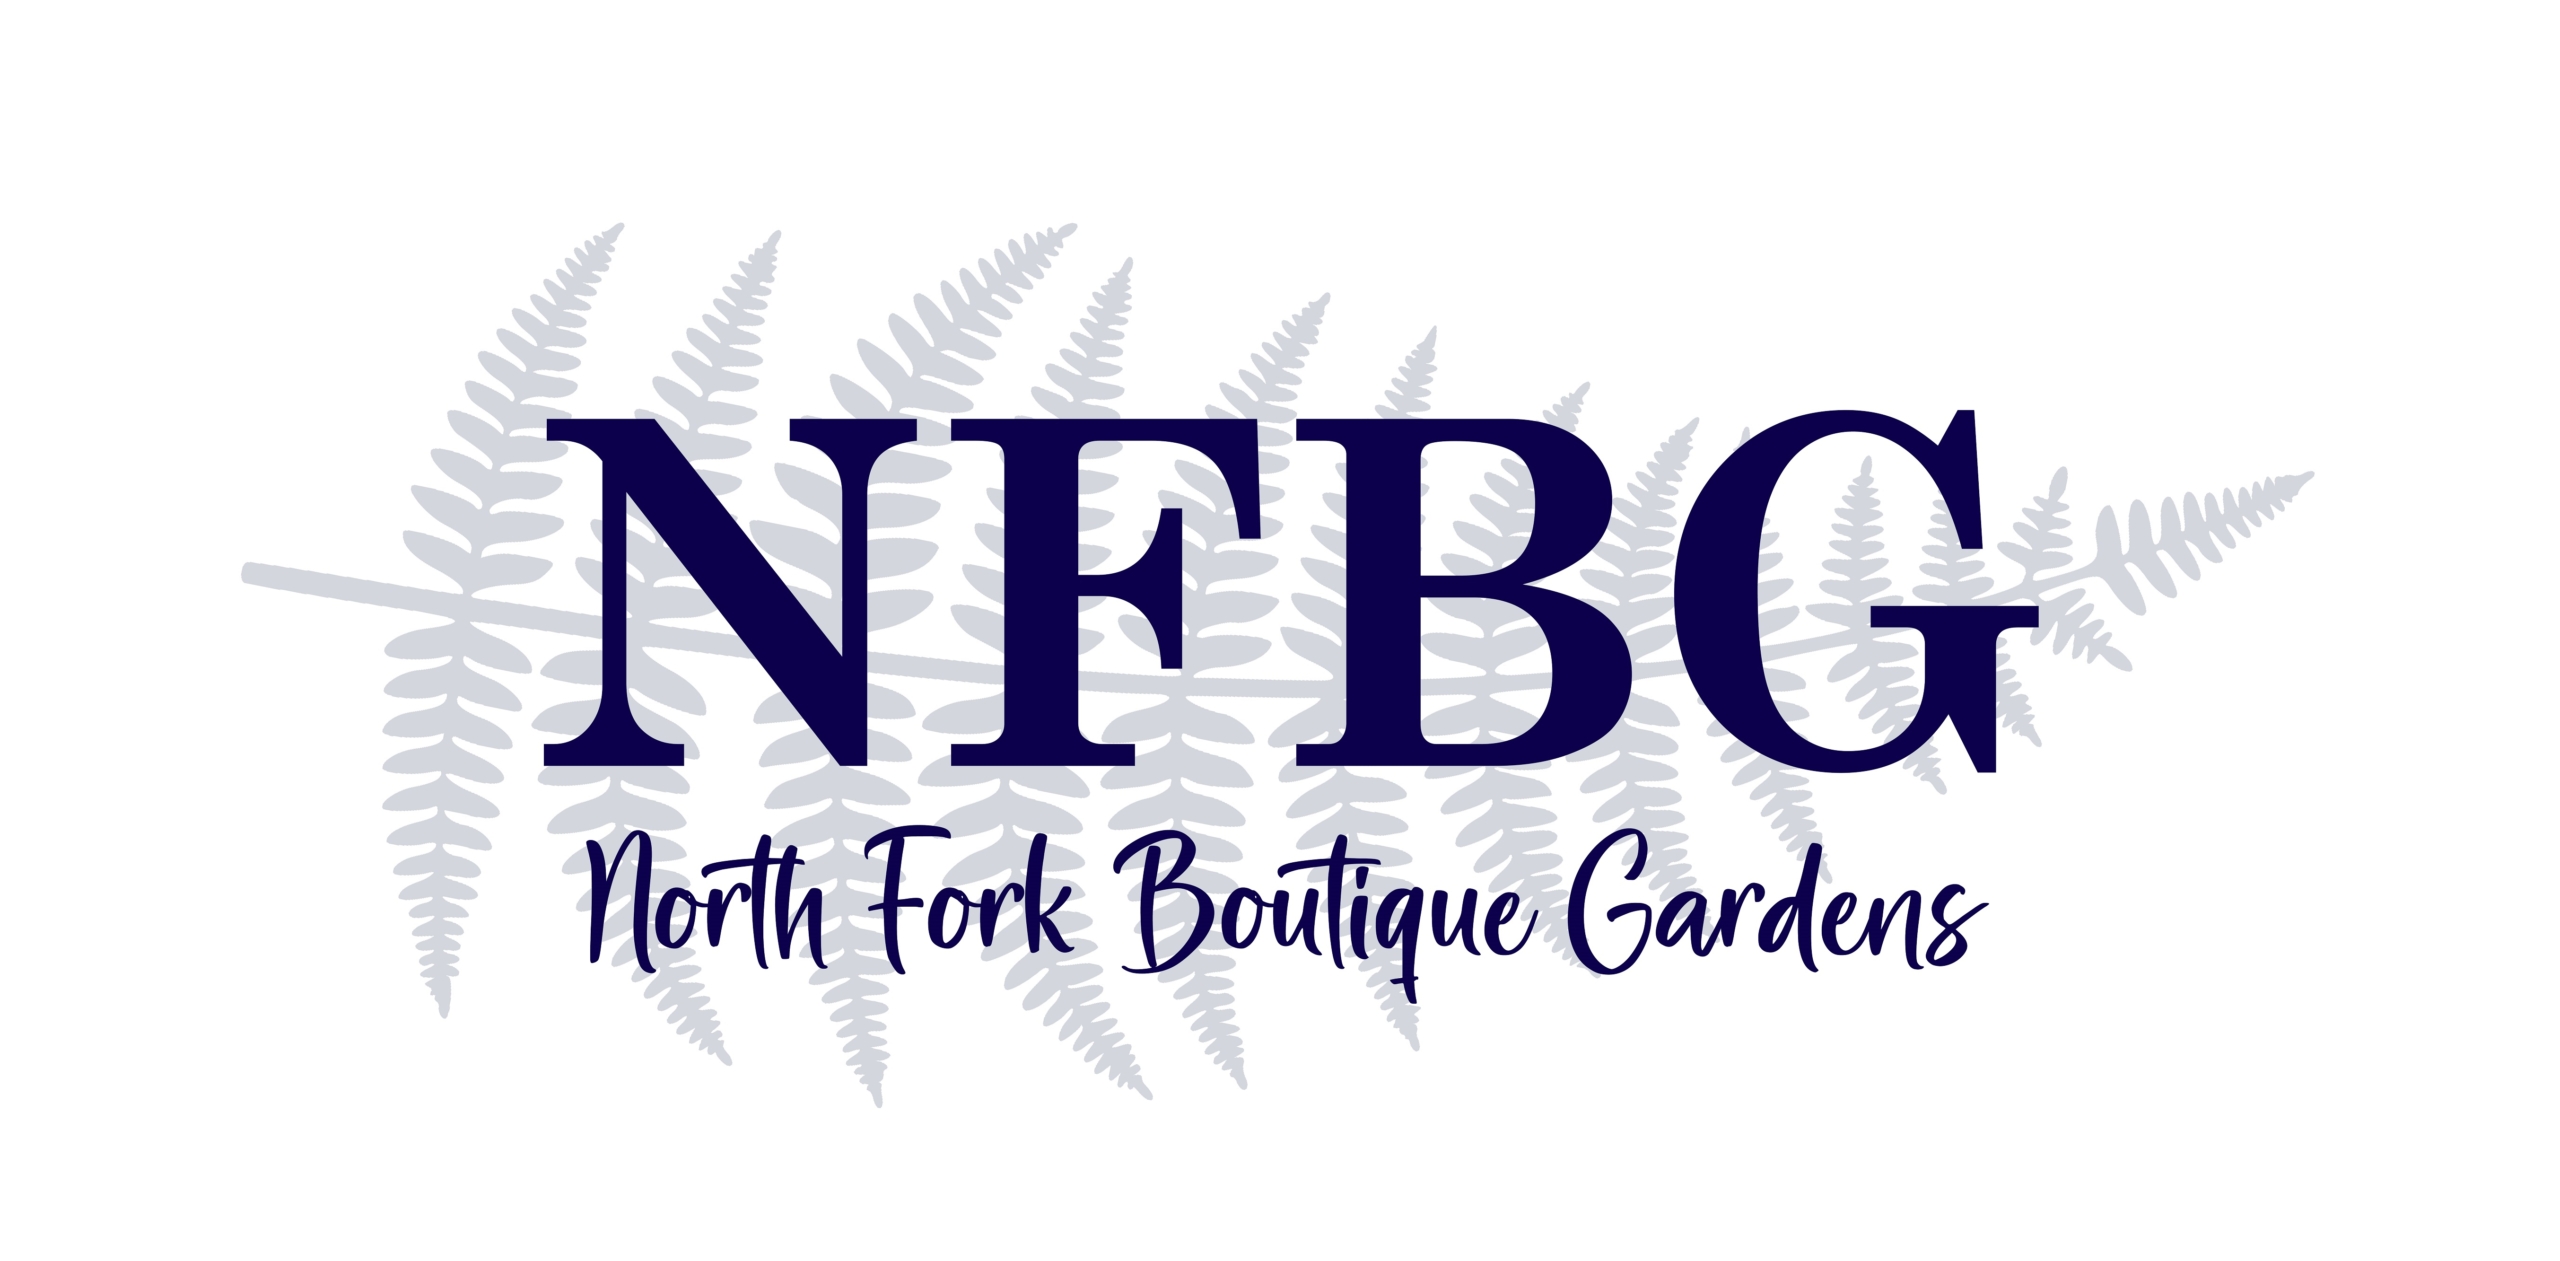 North Fork Boutique Gardens